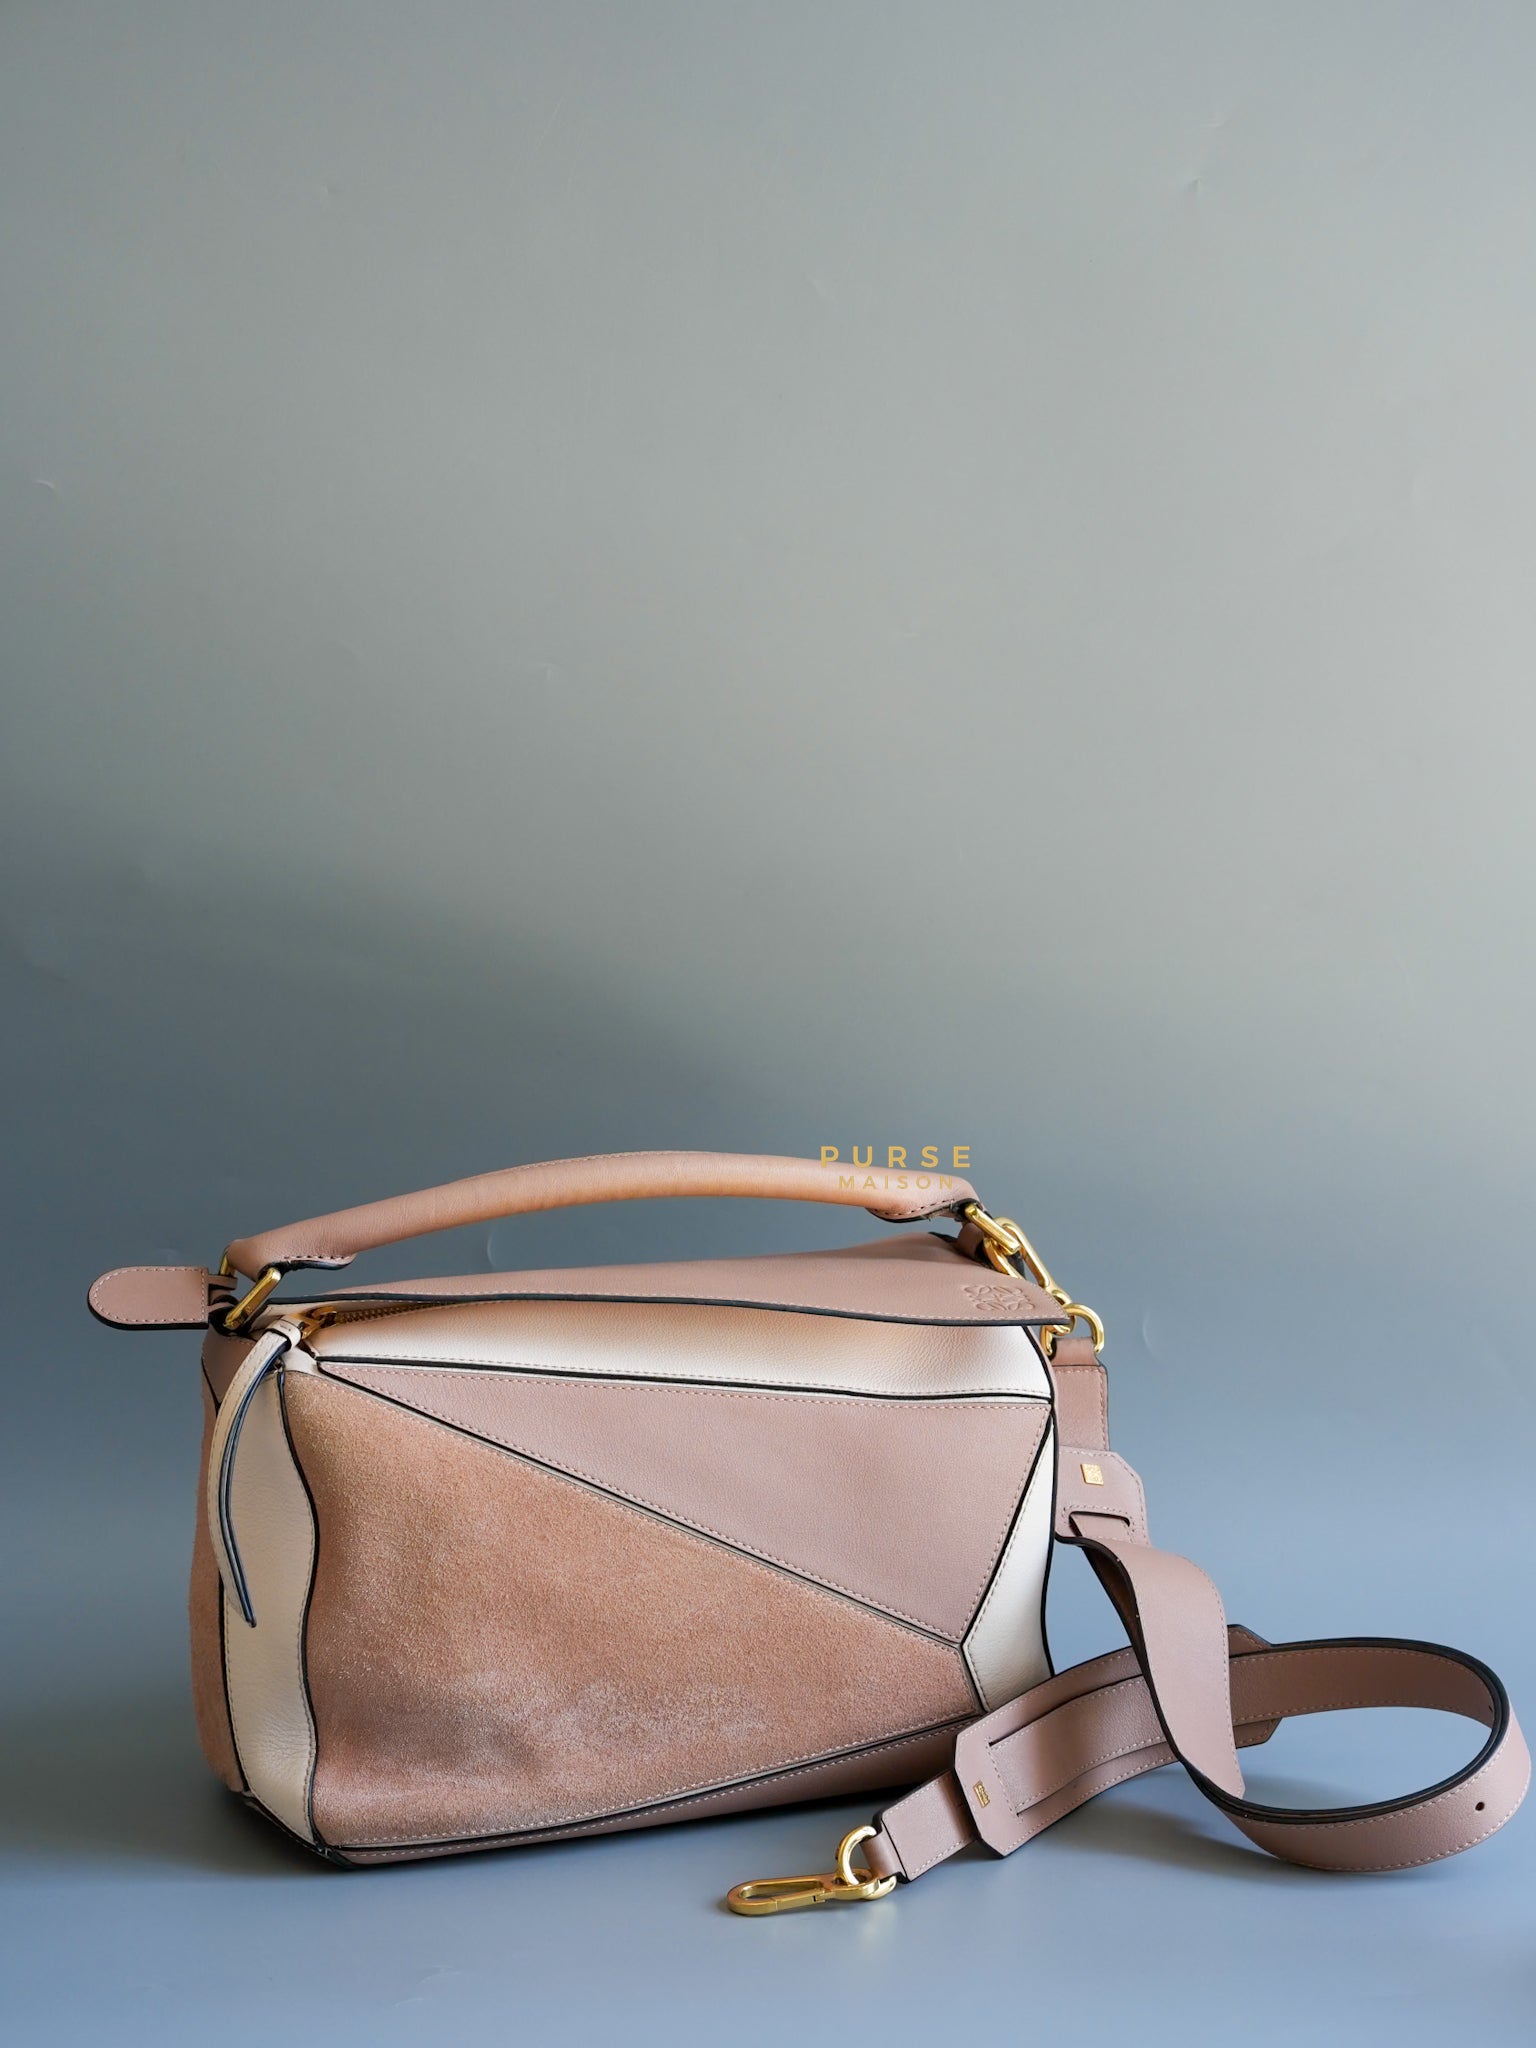 Puzzle Medium Bag Tricolor Soft Calfskin Leather Bag | Purse Maison Luxury Bags Shop